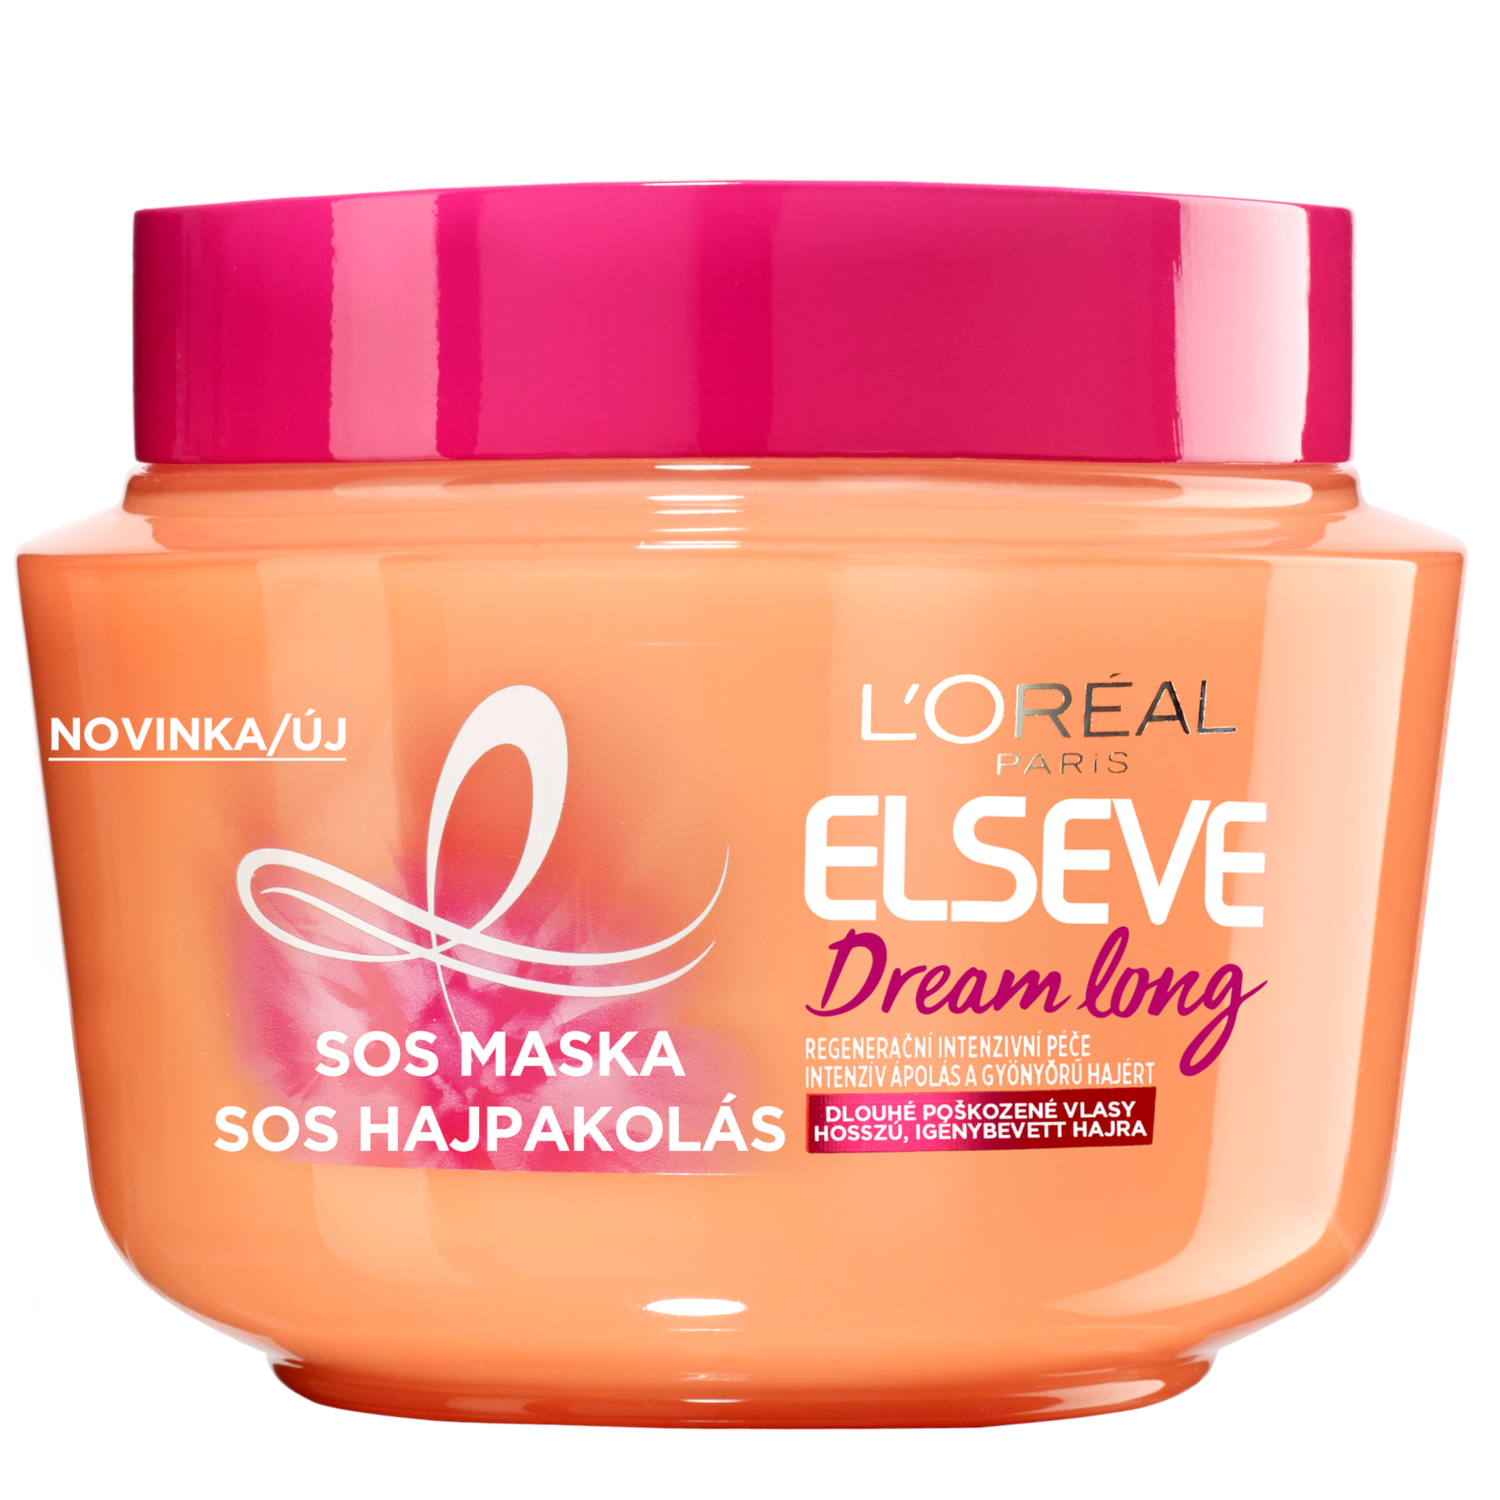 Maska proti lámání vlasů Loréal Elseve Dream Long - 300 ml - L’Oréal Paris + dárek zdarma